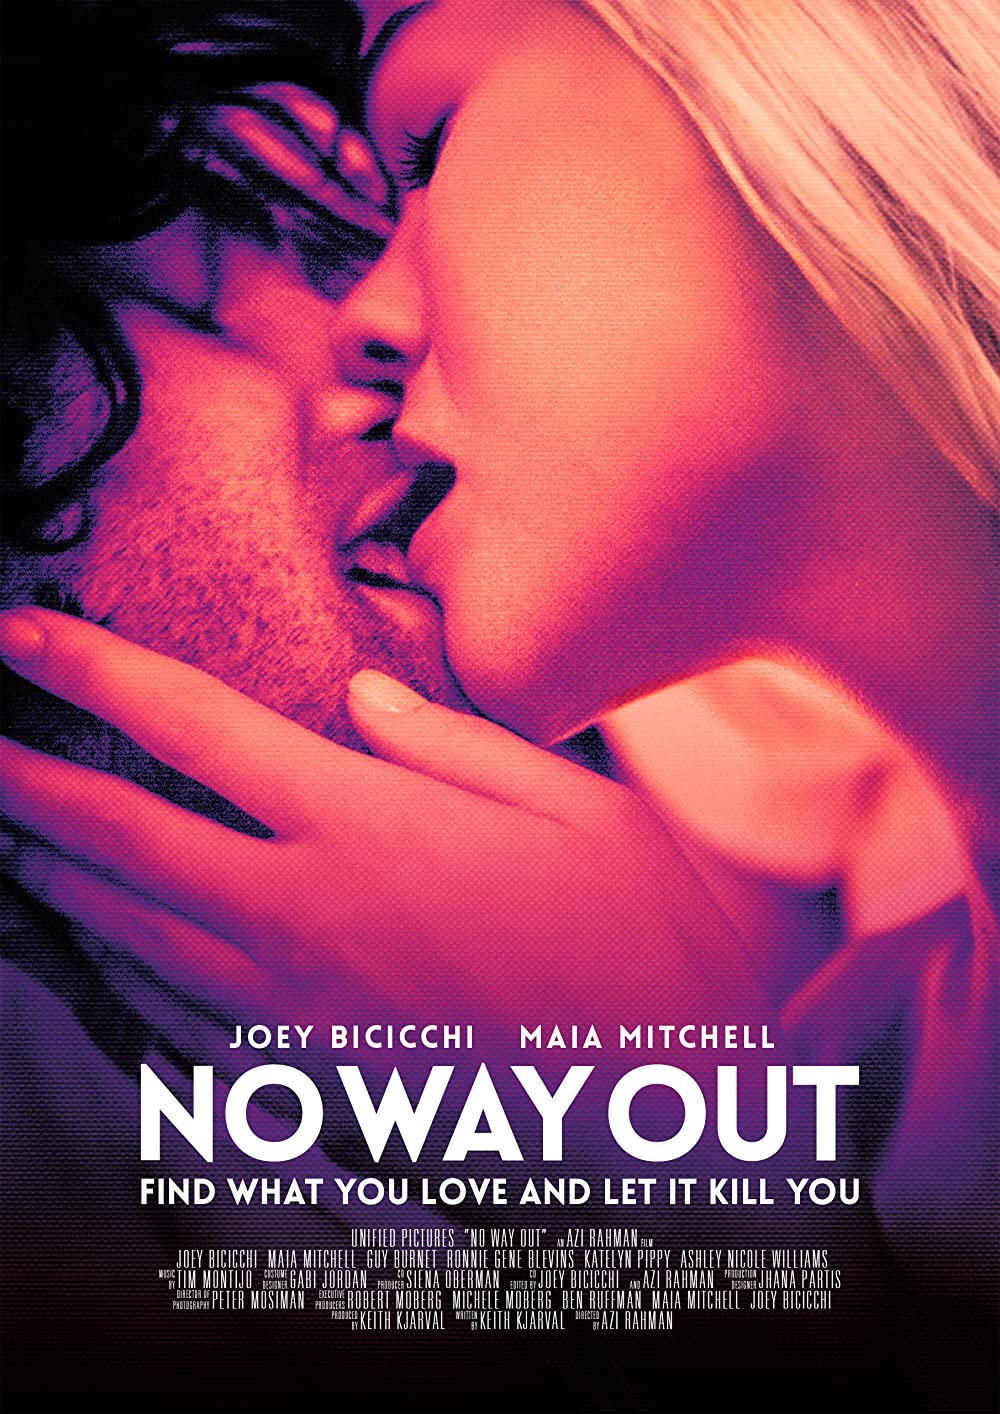 Filmbeschreibung zu No Way Out